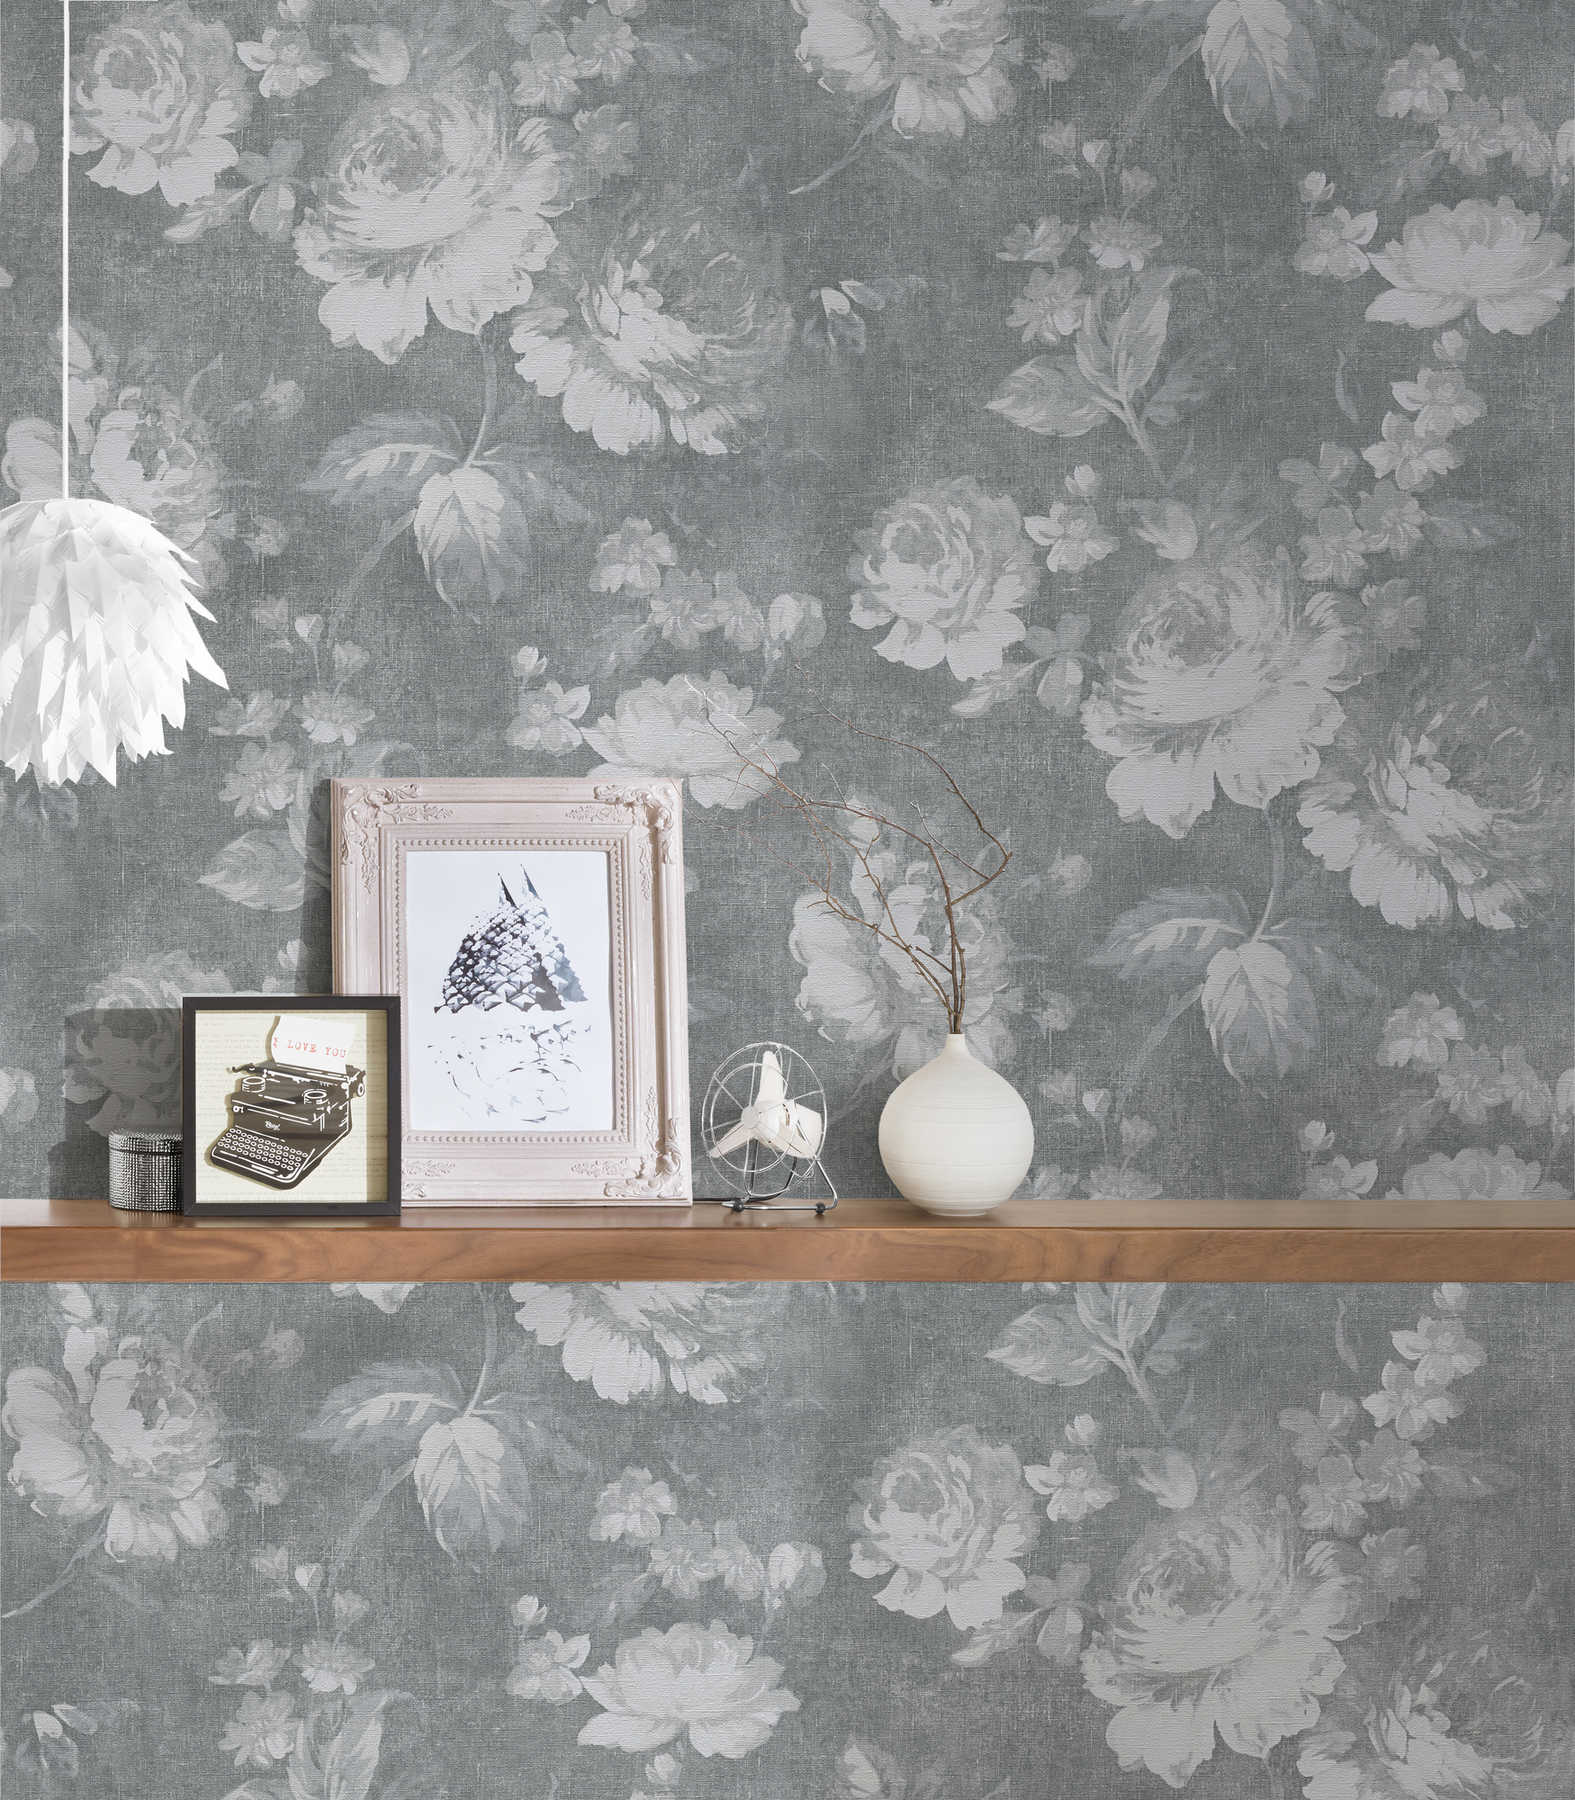             Vintage rose pattern floral wallpaper - grey
        